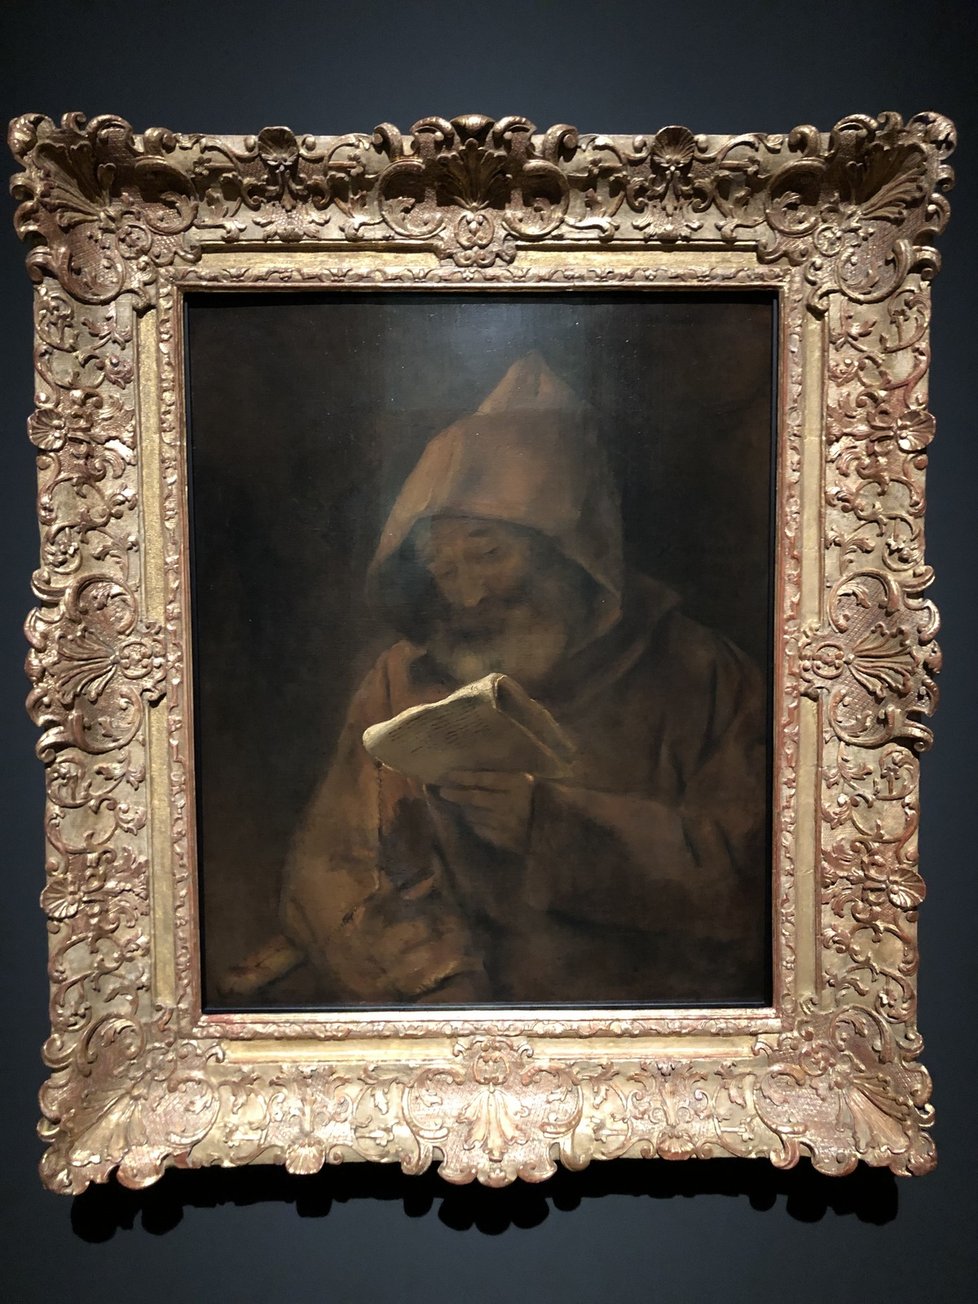 V paláci Kinských začala výstava Rembrandt: Portrét člověka. NG ji kvůli pandemii koronaviru musela přesunout z dubna na konec září.